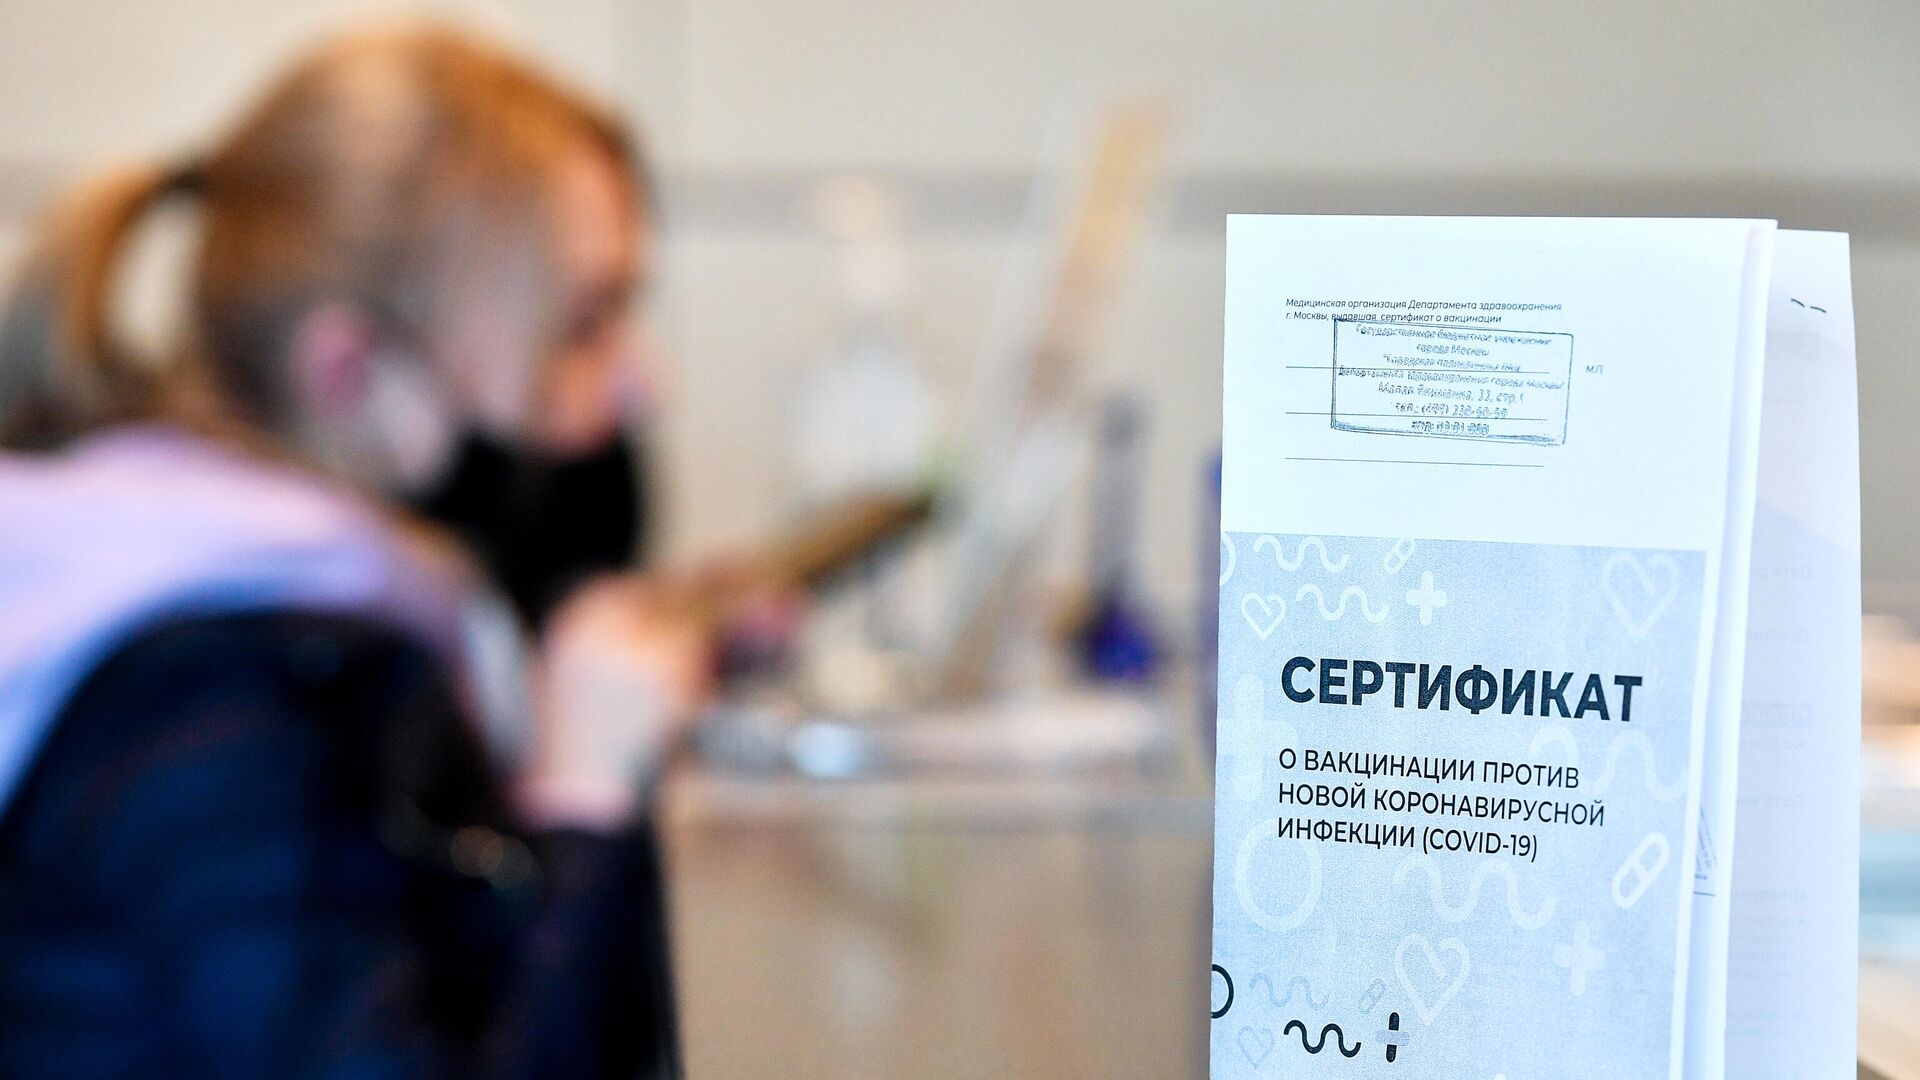 Пассажир получает сертификат международного образца о вакцинации от COVID-19 в аэропорту Домодедово - РИА Новости, 1920, 16.11.2021